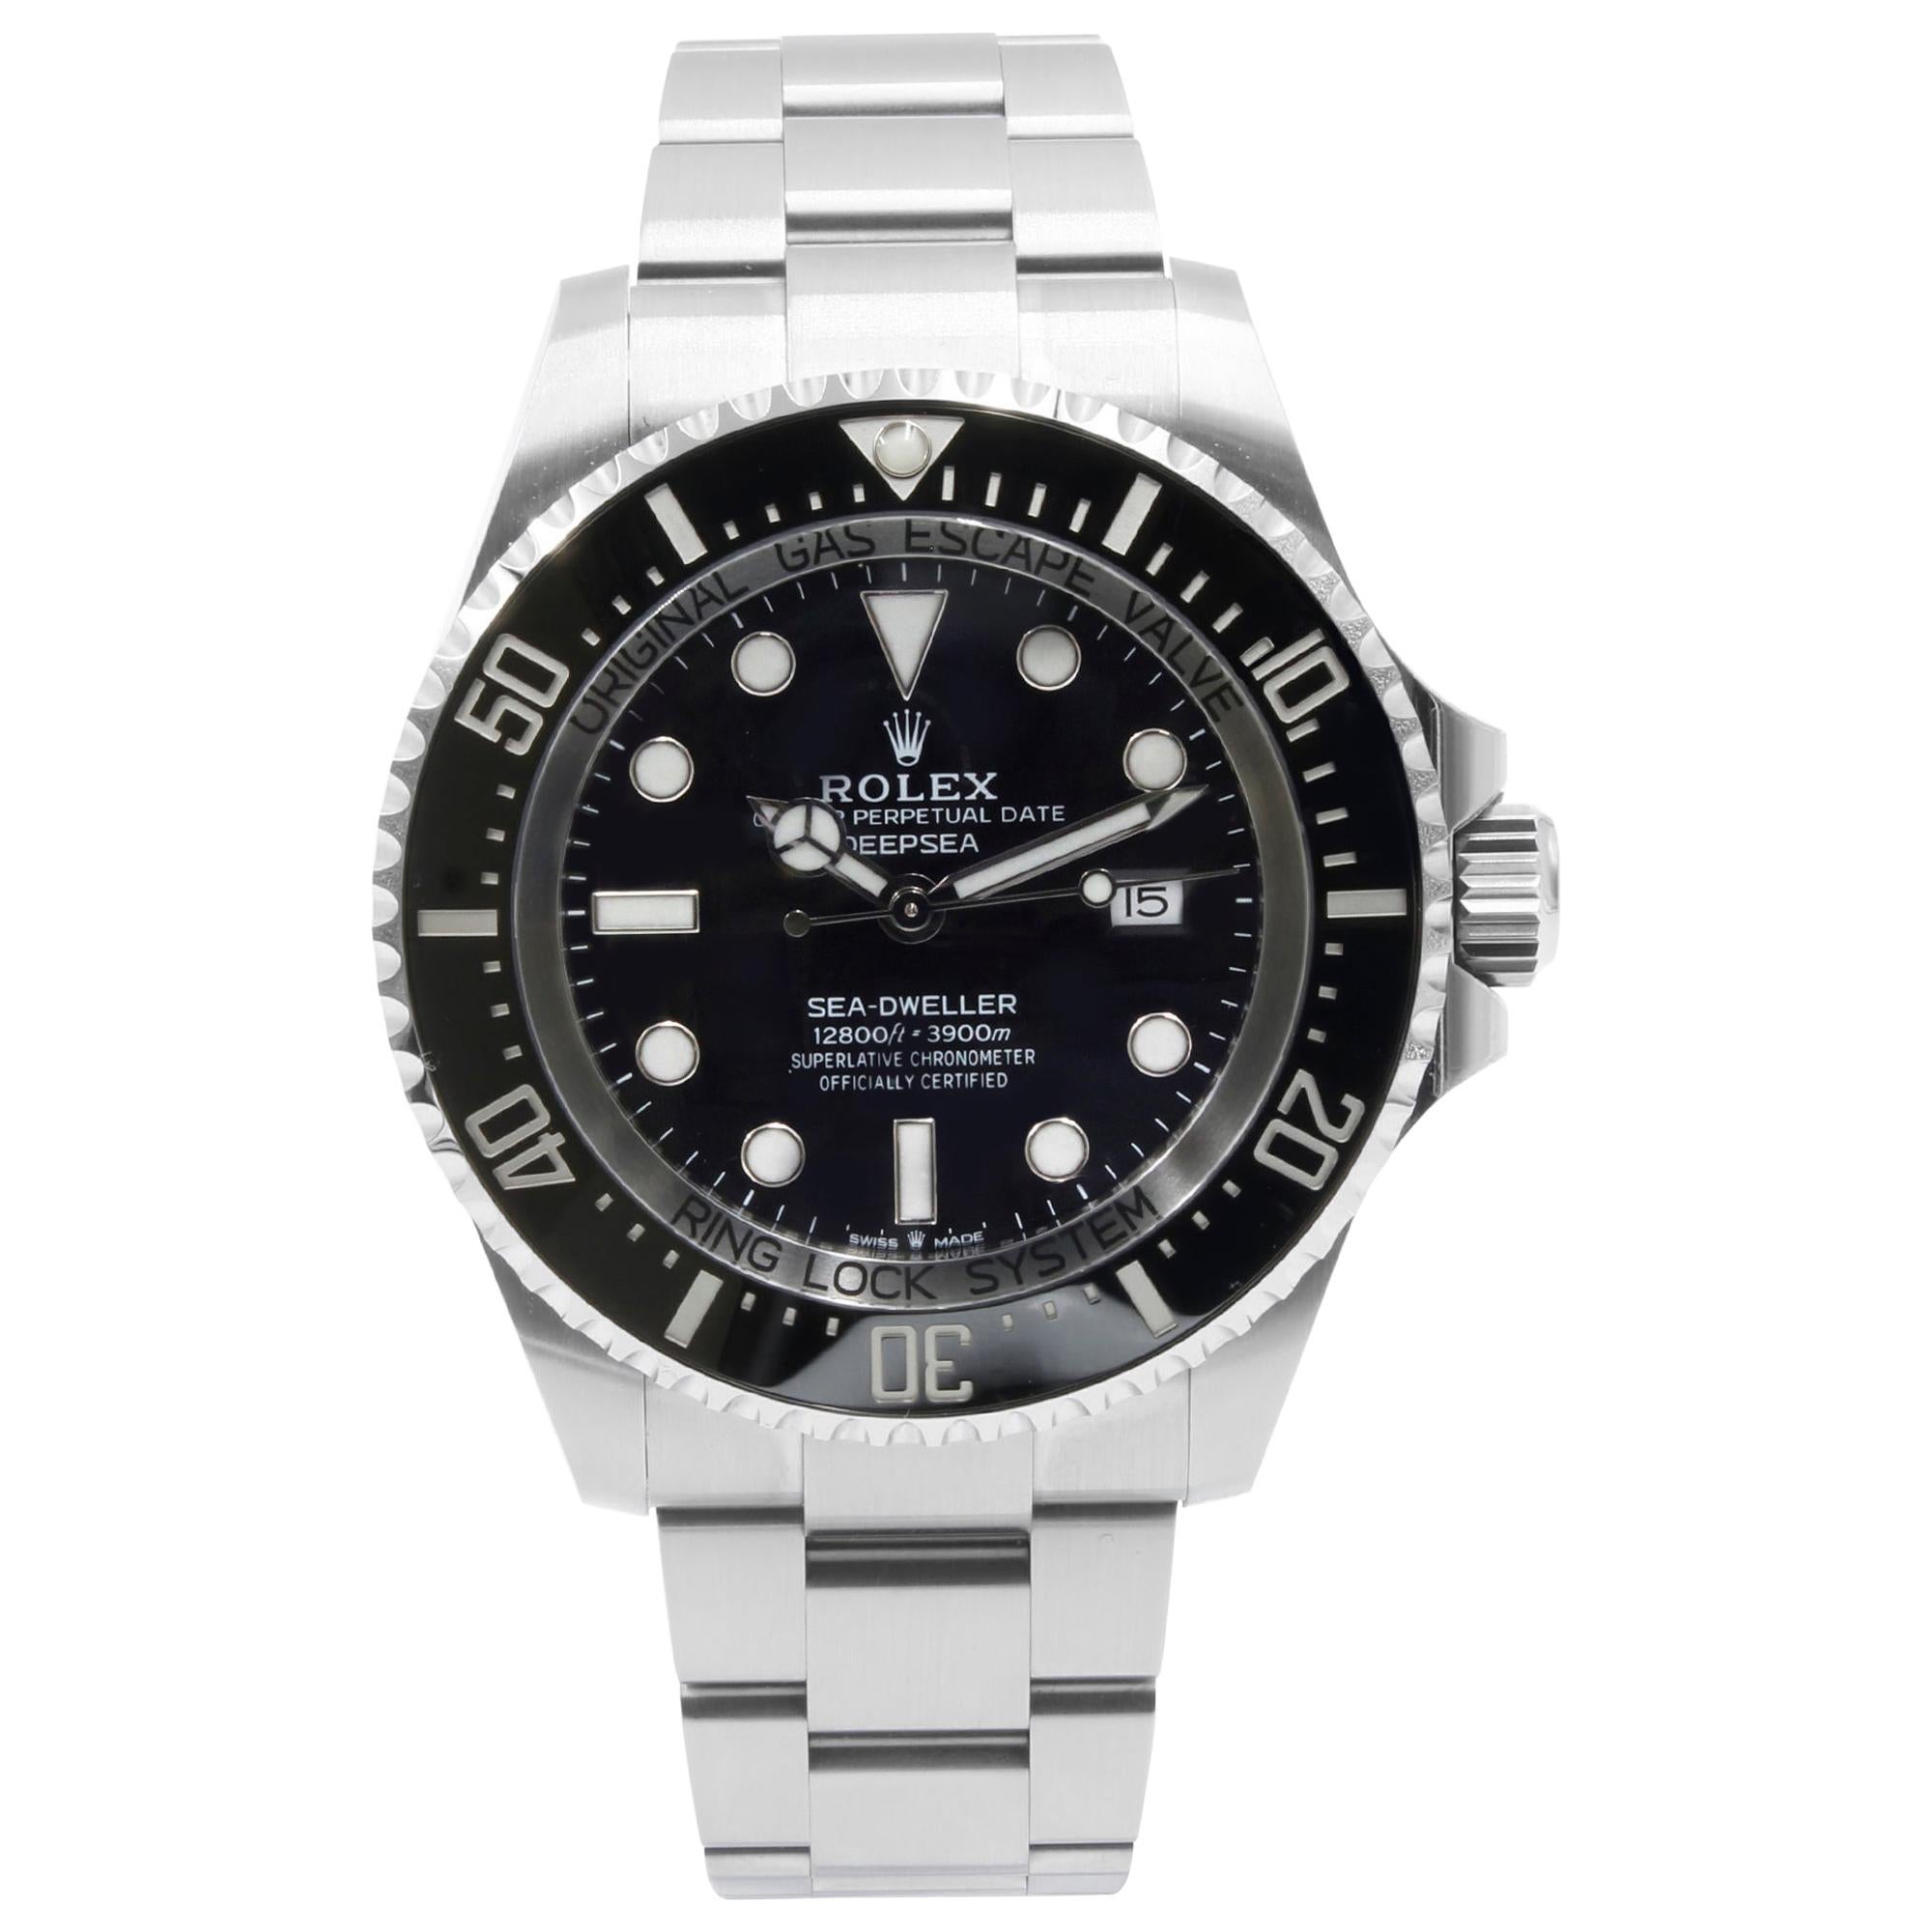 Rolex Sea-Dweller Deepsea 126660 Black Dial Steel Automatic Men's Watch